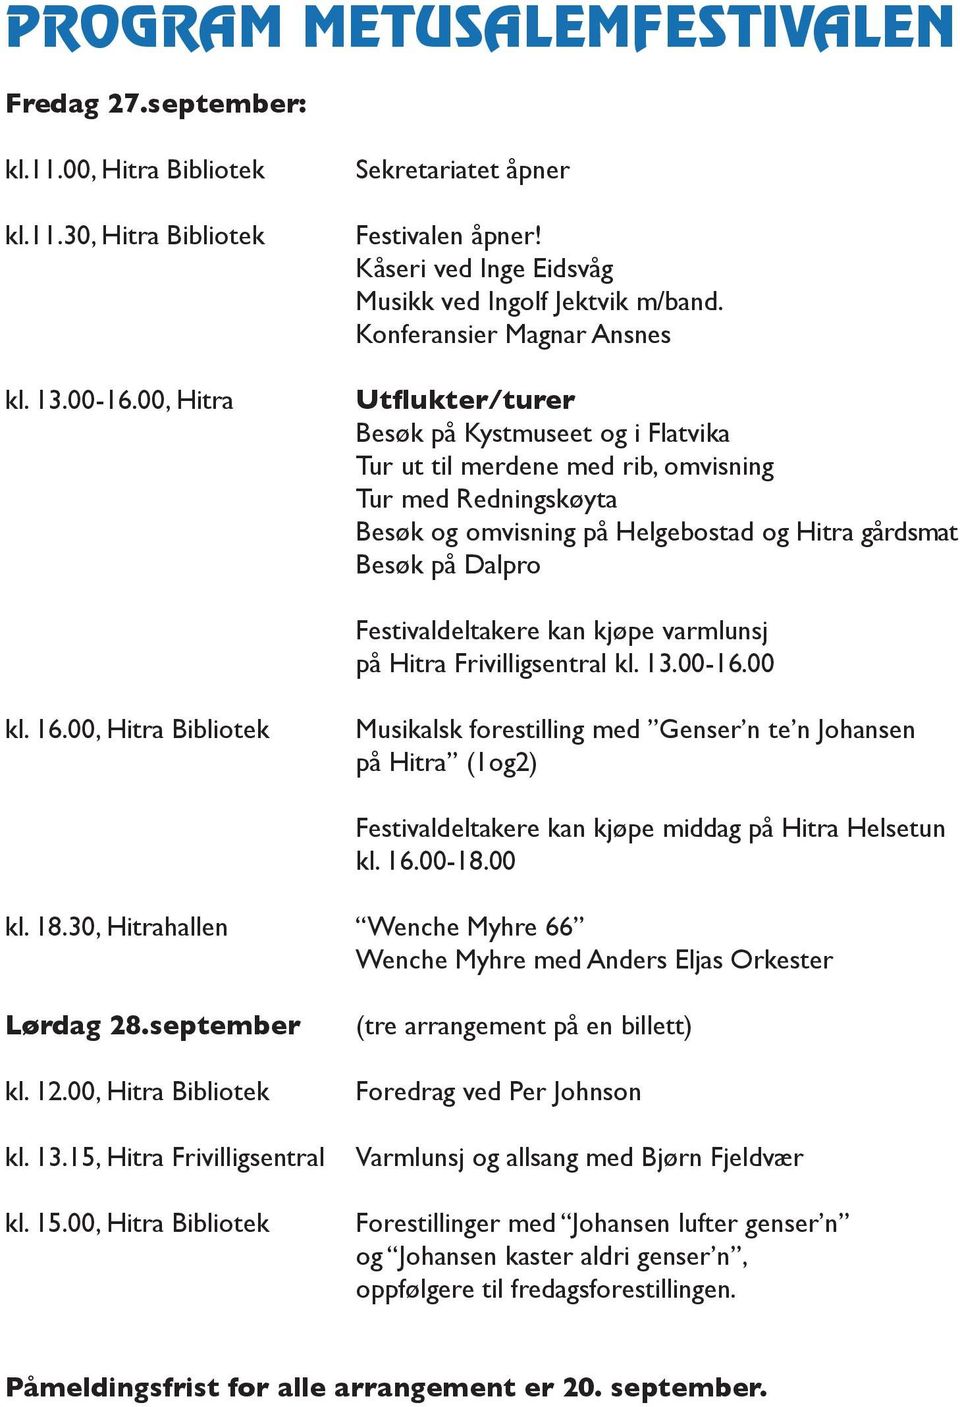 VELKOMMEN TIL METUSALEMFESTIVALEN PÅ HITRA SEPTEMBER 2013! - PDF Gratis  nedlasting